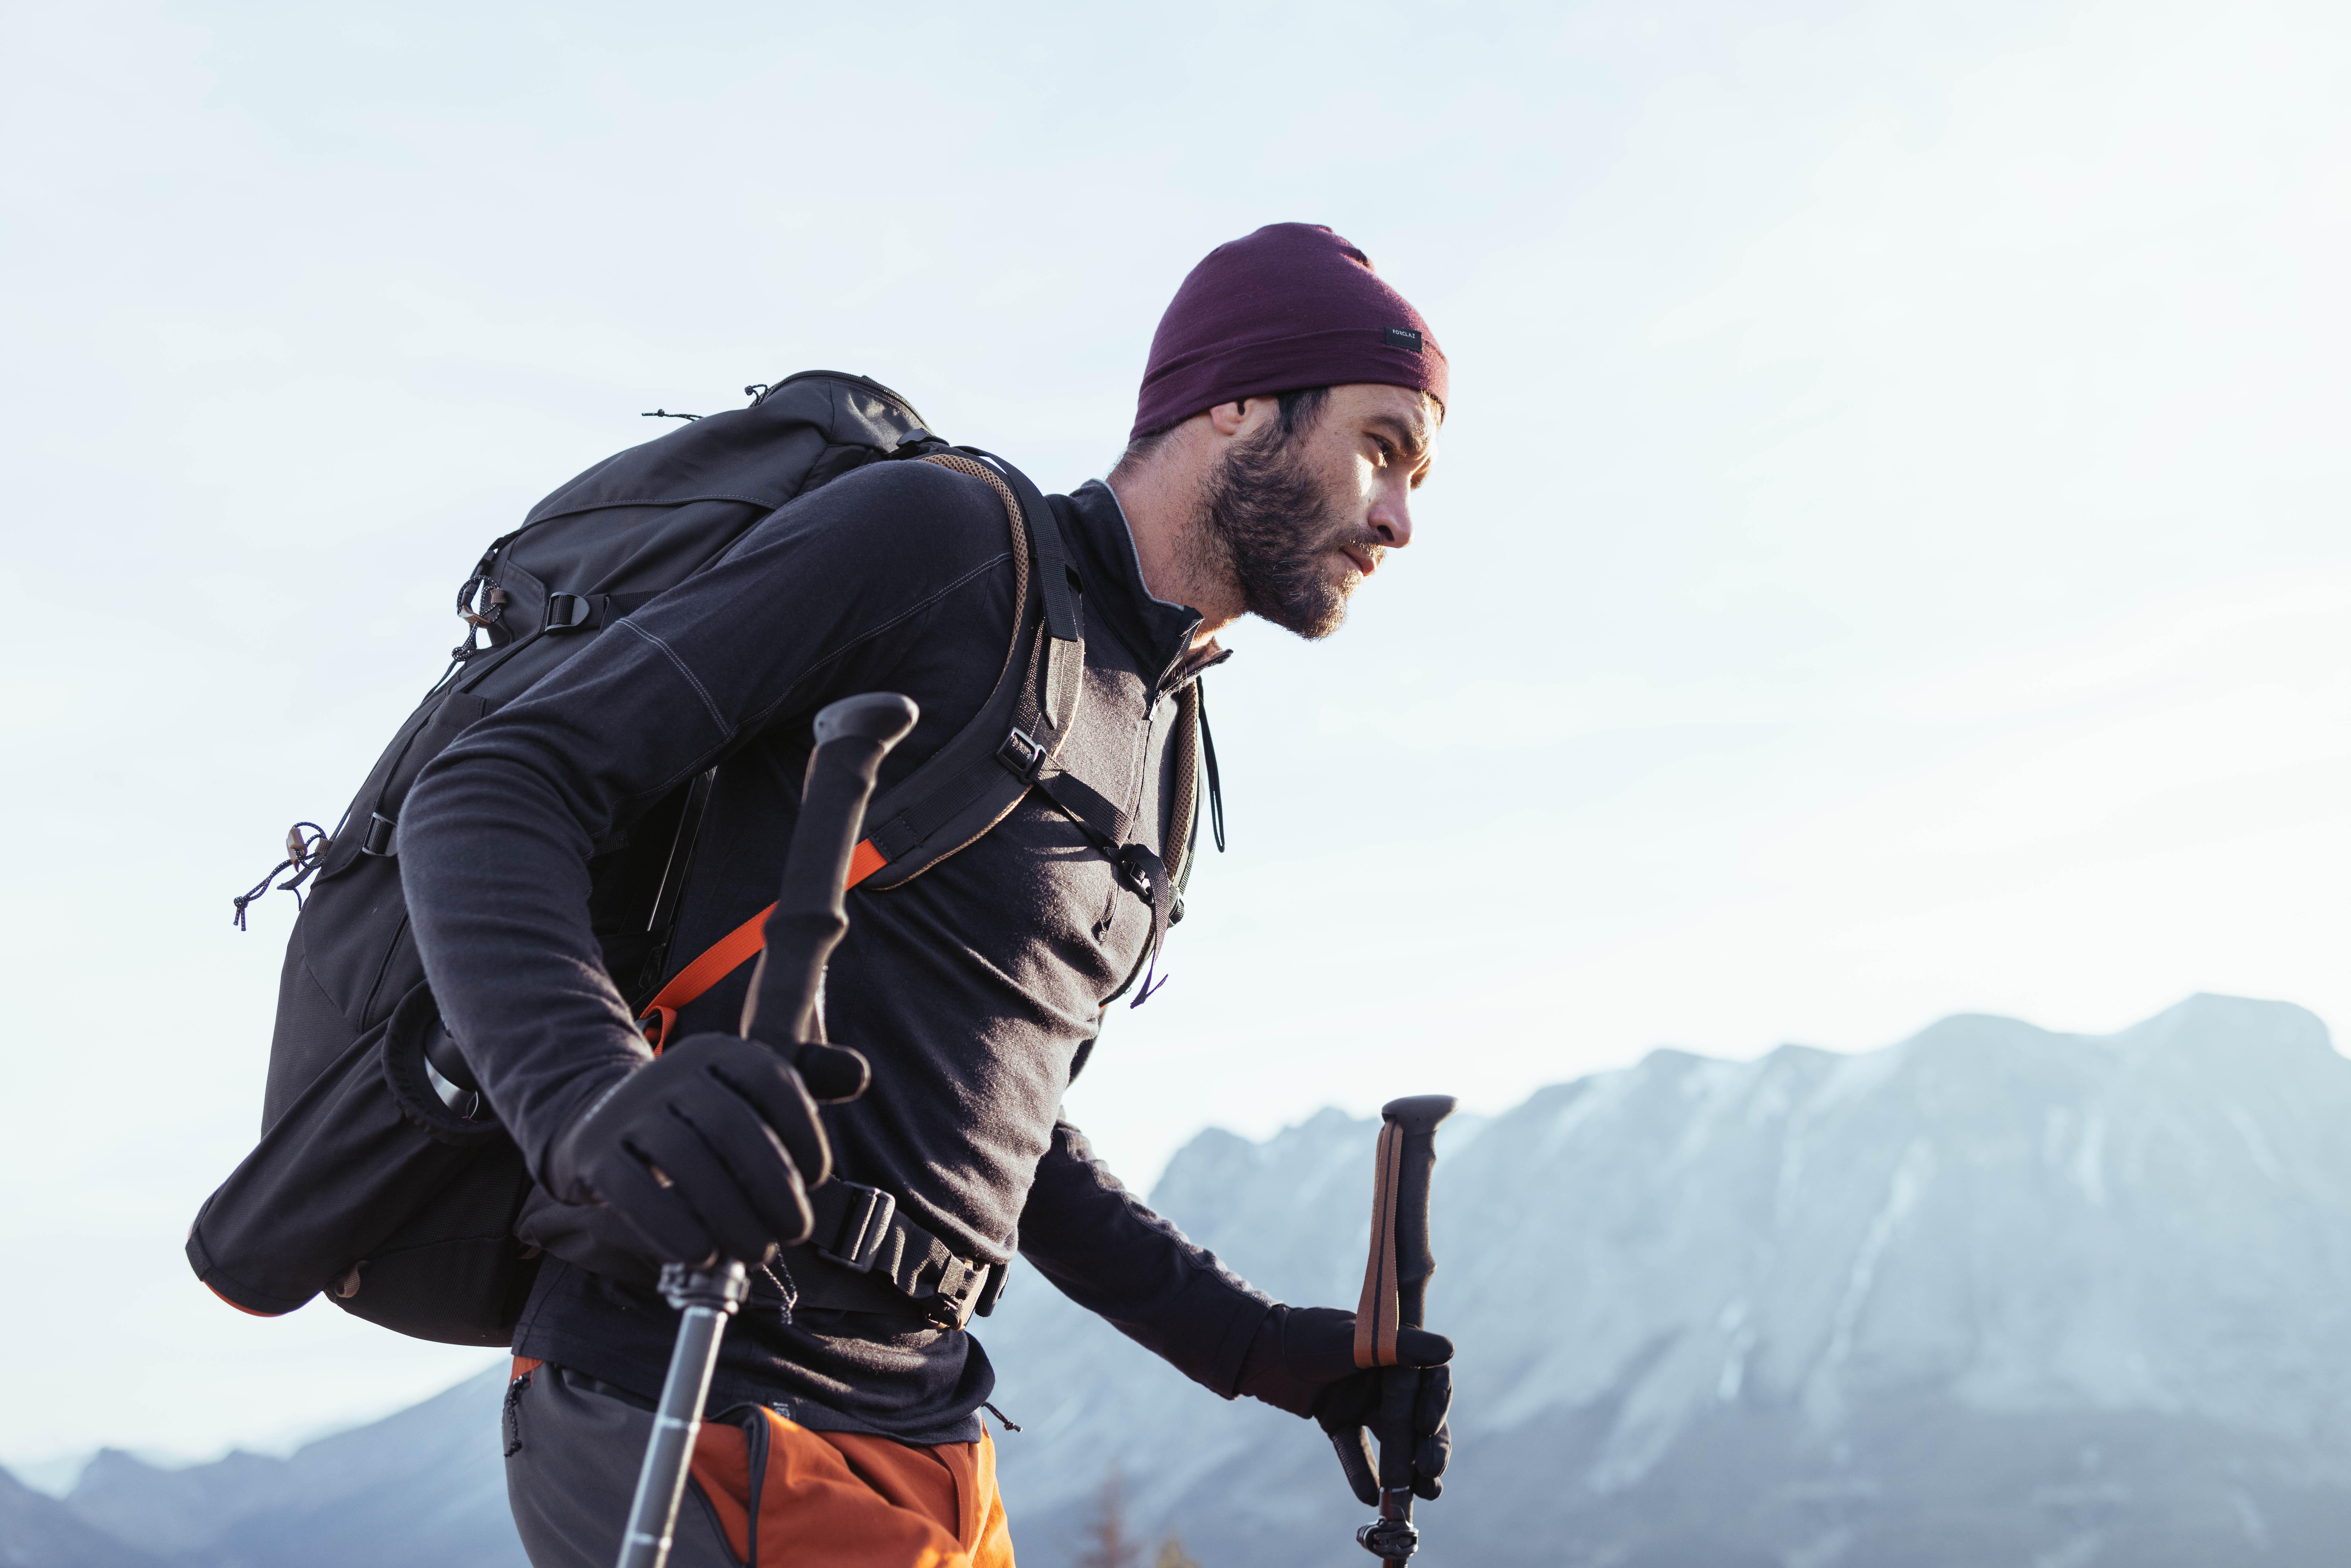 Men's Hiking Long-Sleeved Merino T-Shirt - Trek 500 Black - FORCLAZ